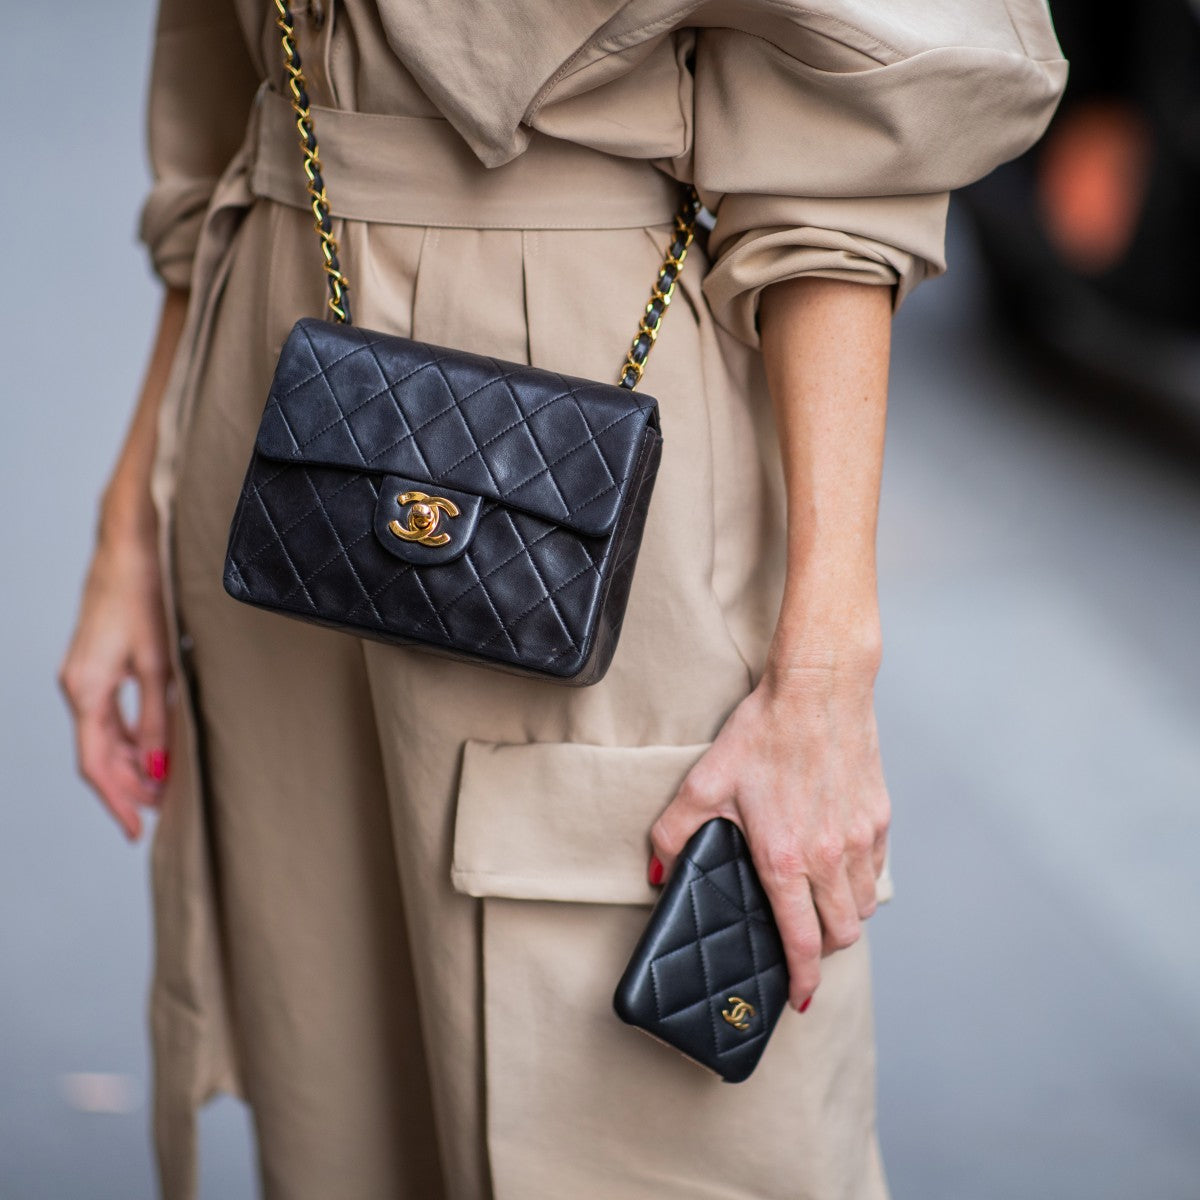 Konsultere Indtil nu Gætte Vintage Chanel vs. New - Why Vintage Chanel is Having a Moment – Sellier